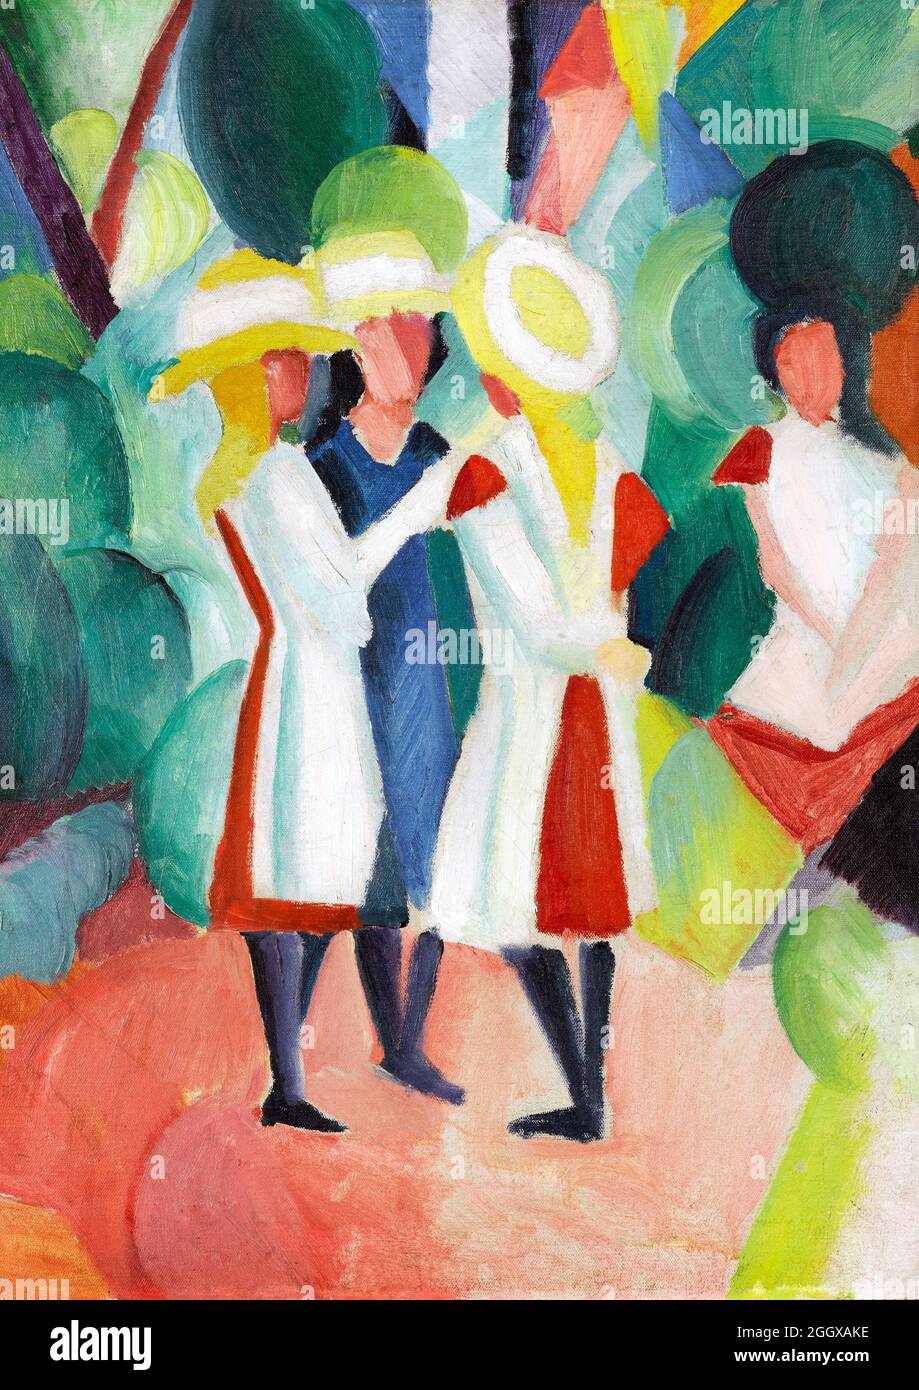 Agosto Macke. Dipinto intitolato "tre ragazze in cappellini gialli della paglia i" del pittore espressionista tedesco August Macke (1887-1914), olio su tela, 1913 Foto Stock